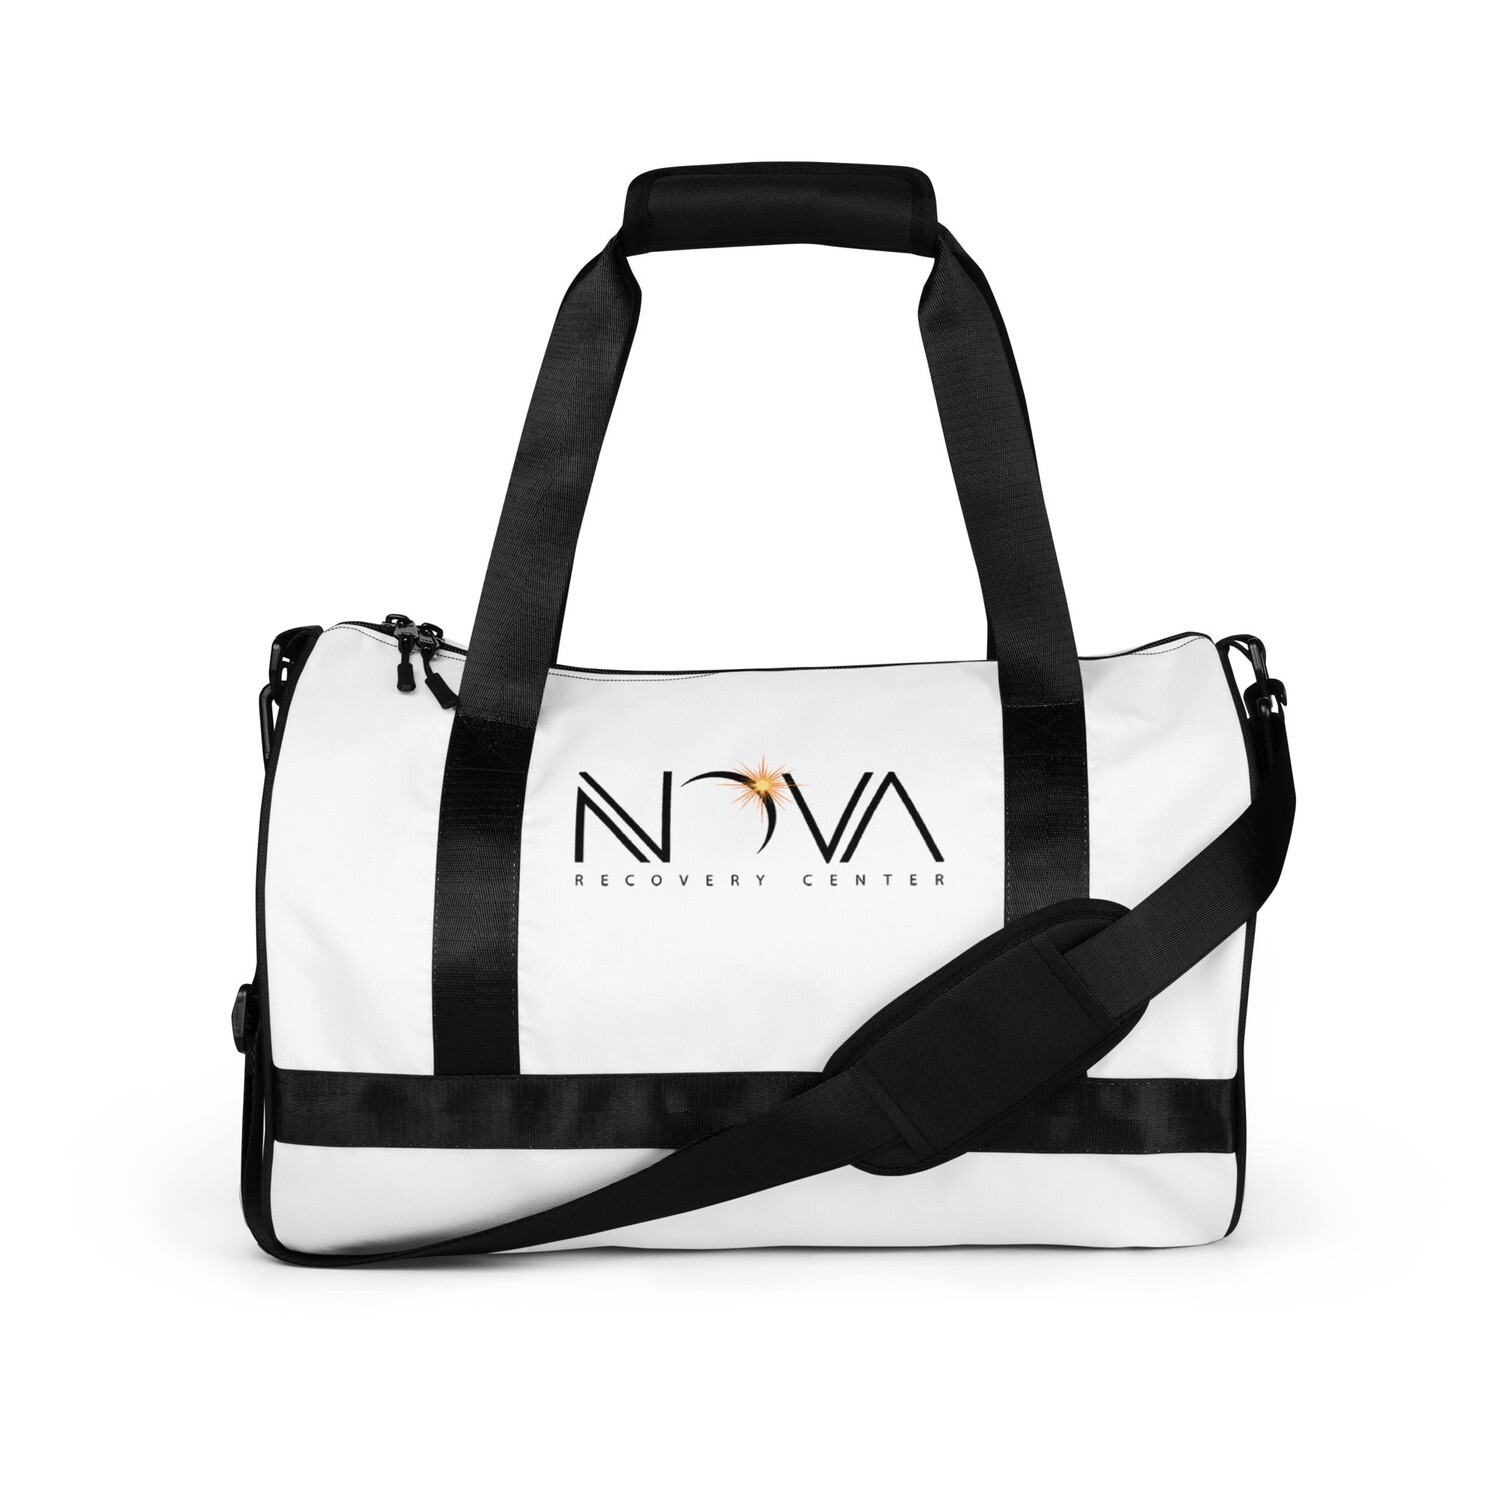 Nova gym bag